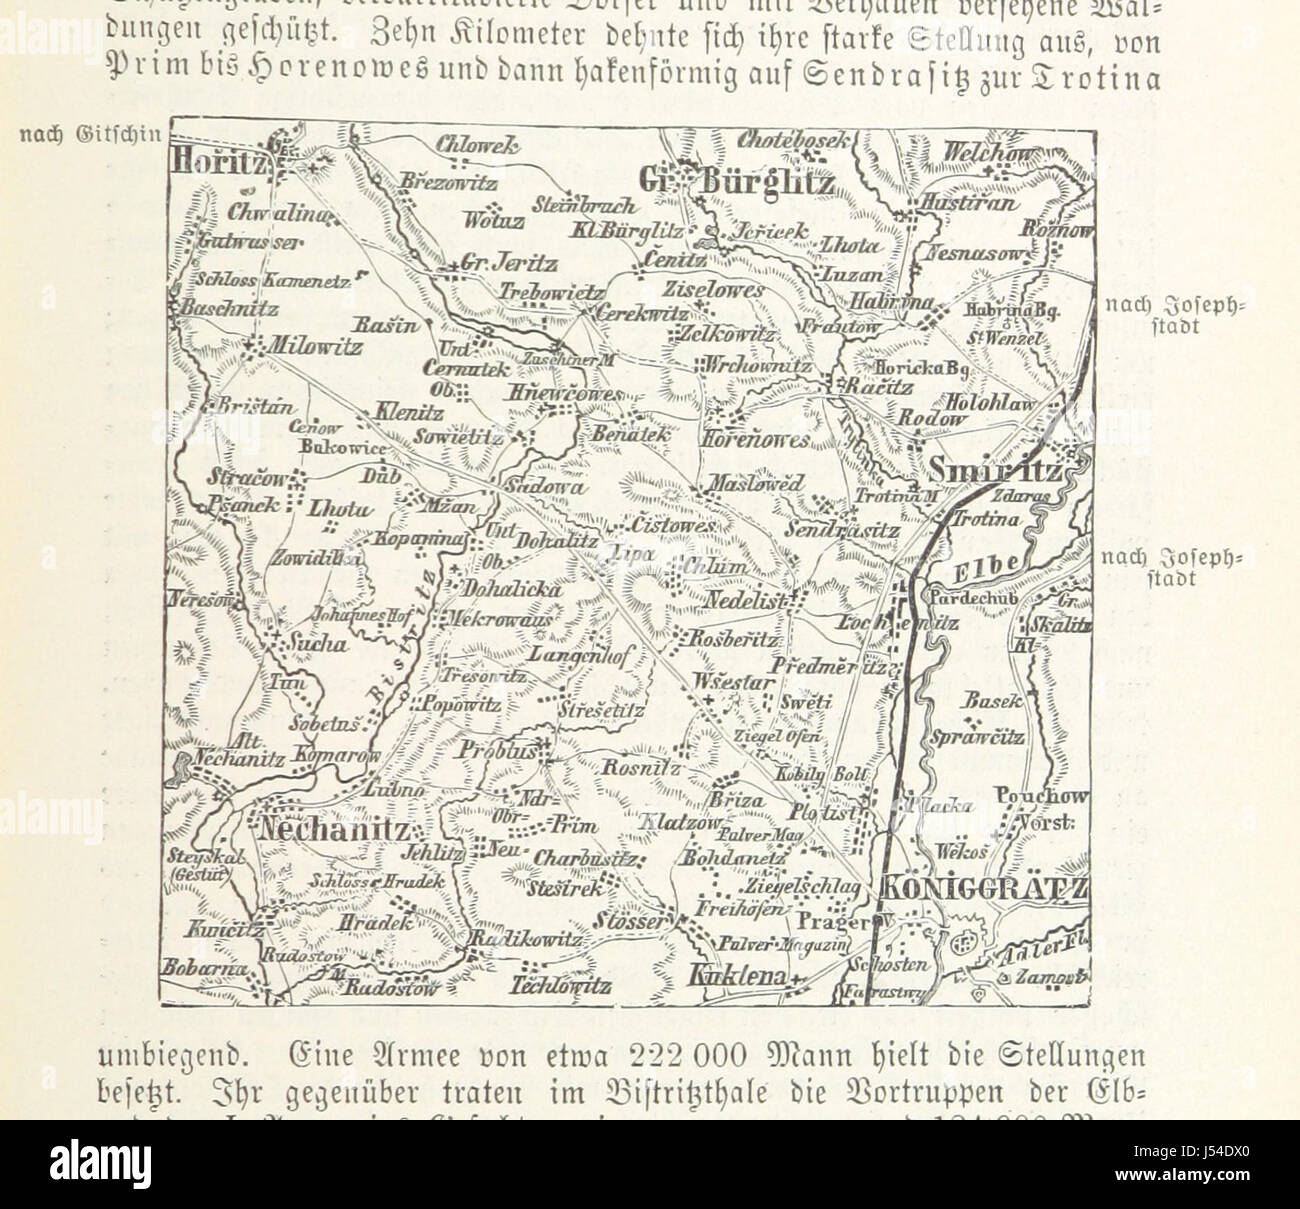 Brandenburgisch-preussische Geschichte ... Mit drei Karten die Entwickelung des preussischen Staates darstellend, etc Stock Photo